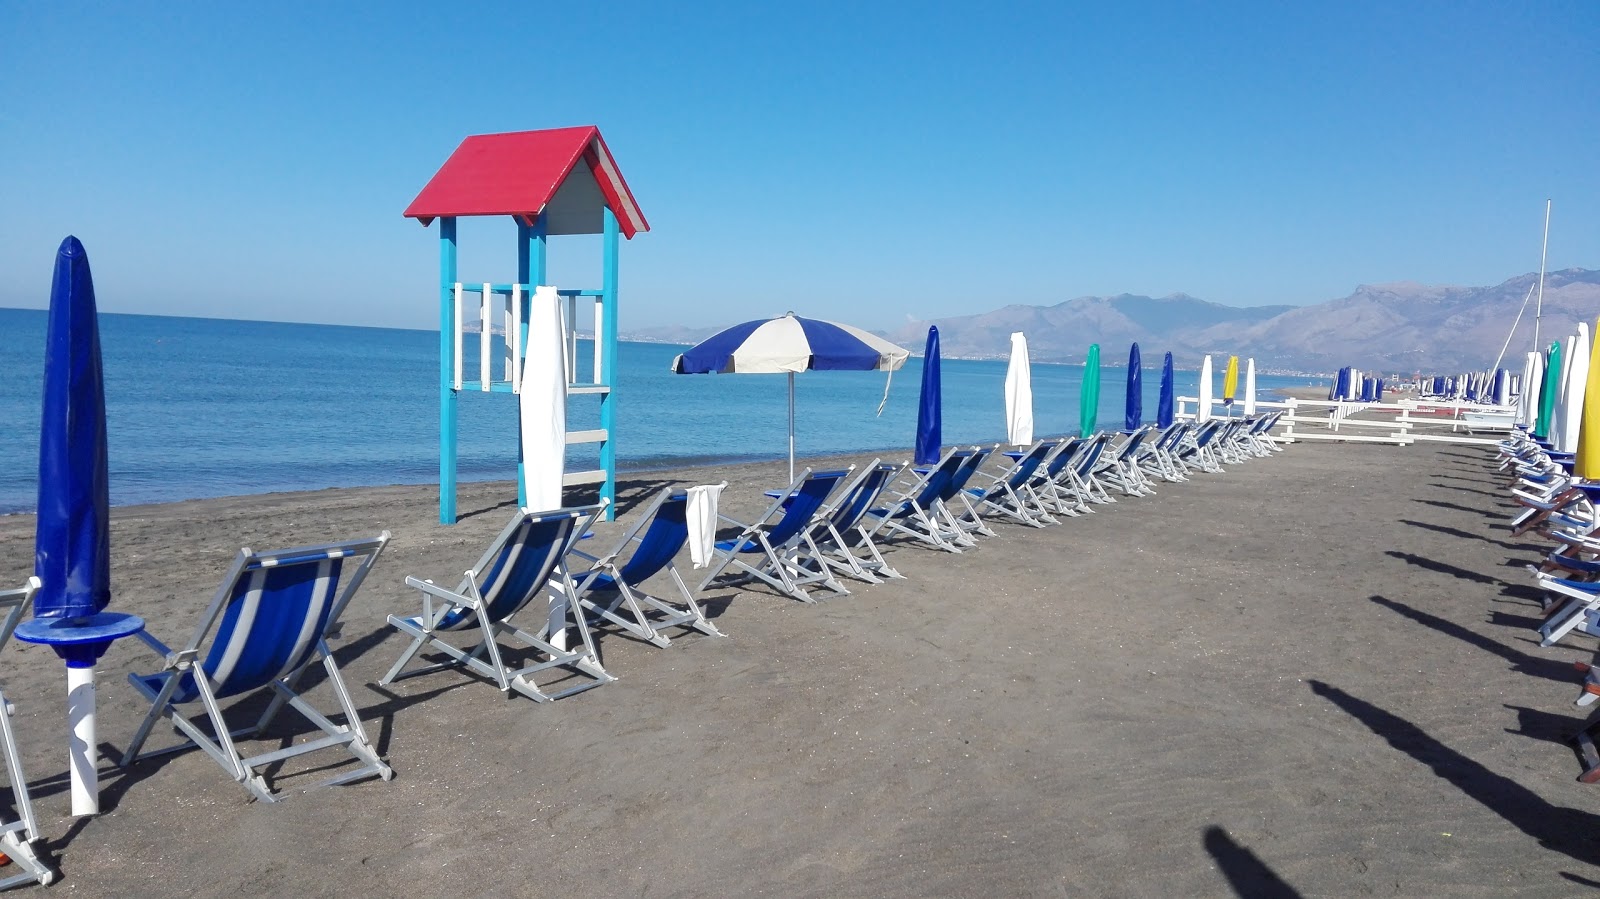 Foto af Baia Domizia beach - populært sted blandt afslapningskendere